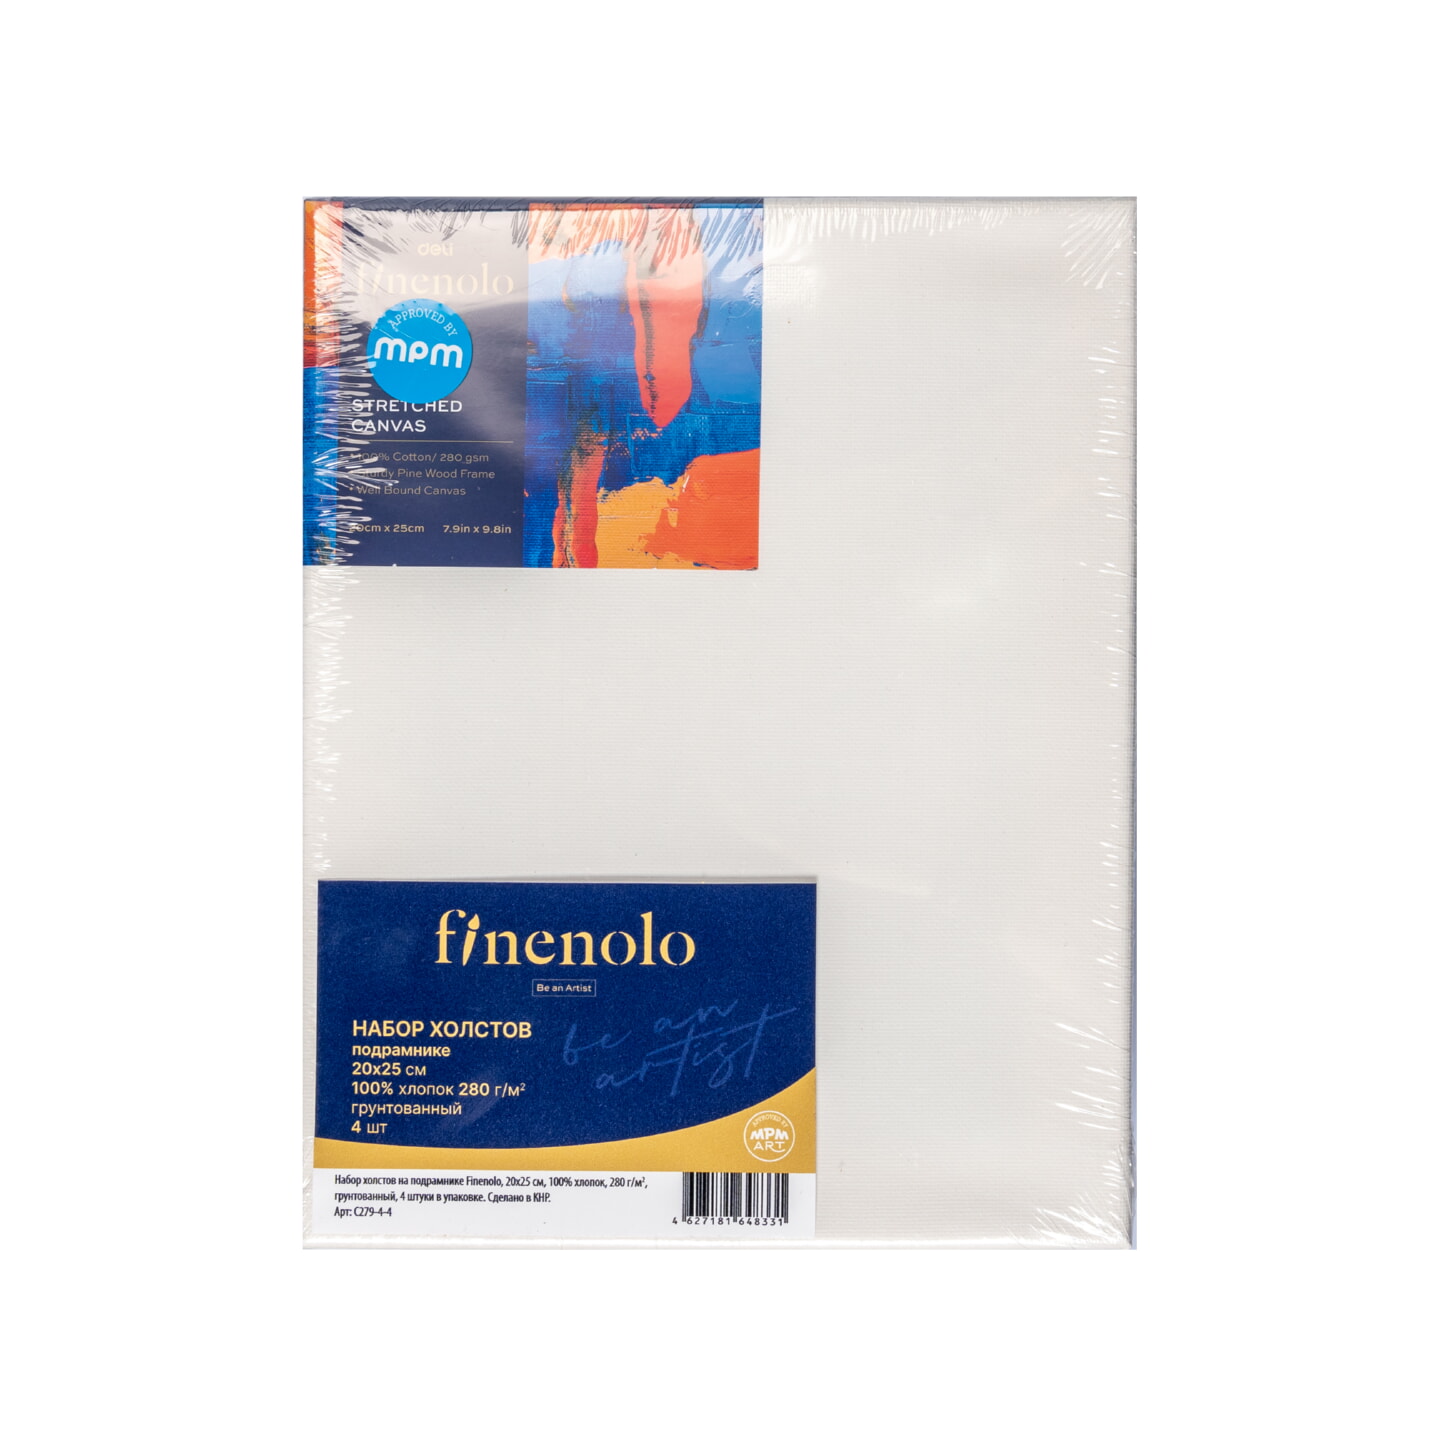 Набор холстов на подрамнике Finenolo 20х25см 100%хлопок 280 г/м2 грунтованный 4 штуки в упаковке